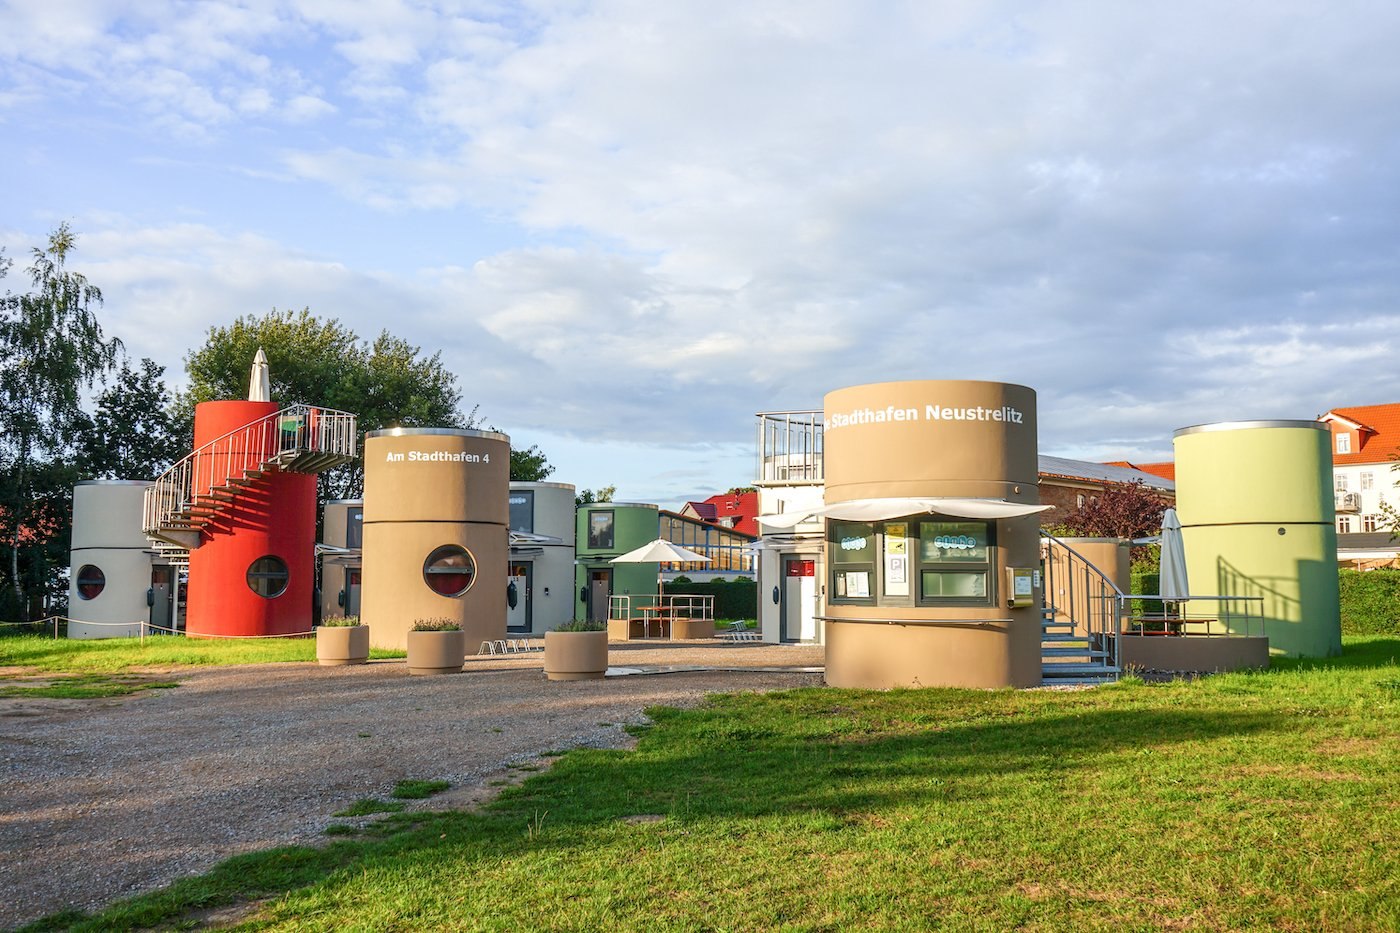 Zylinderförmige Gebäude am Stadthafen Neustrelitz